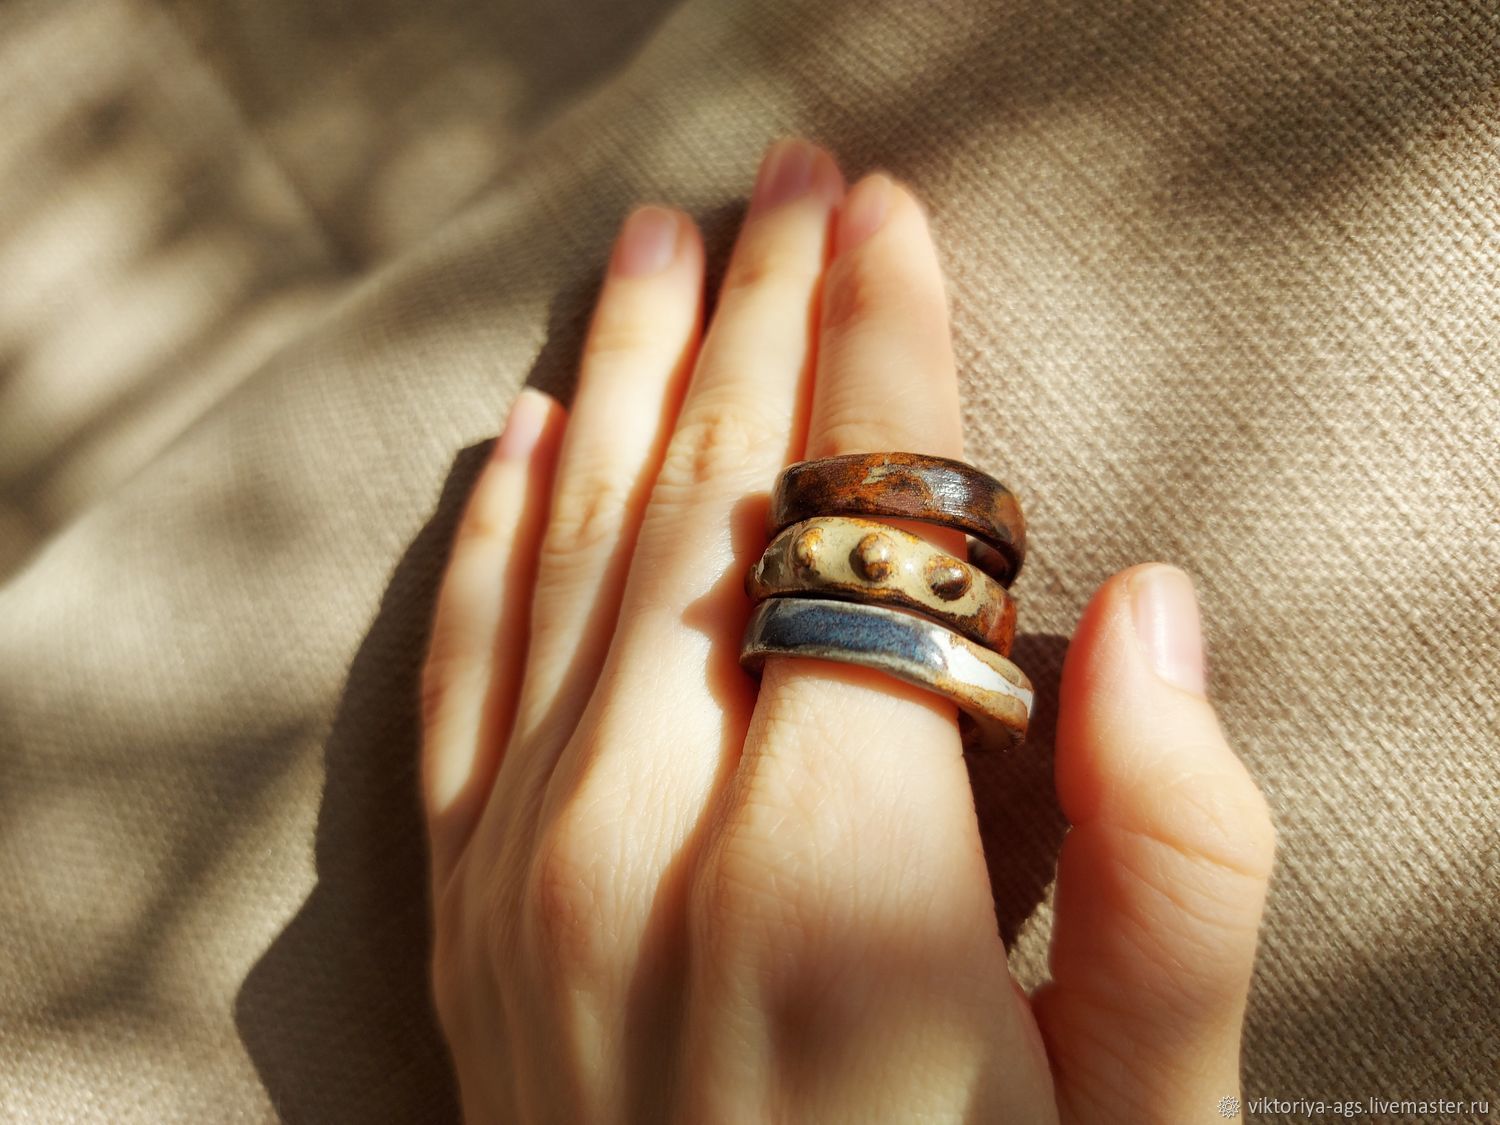 Керамическое кольцо